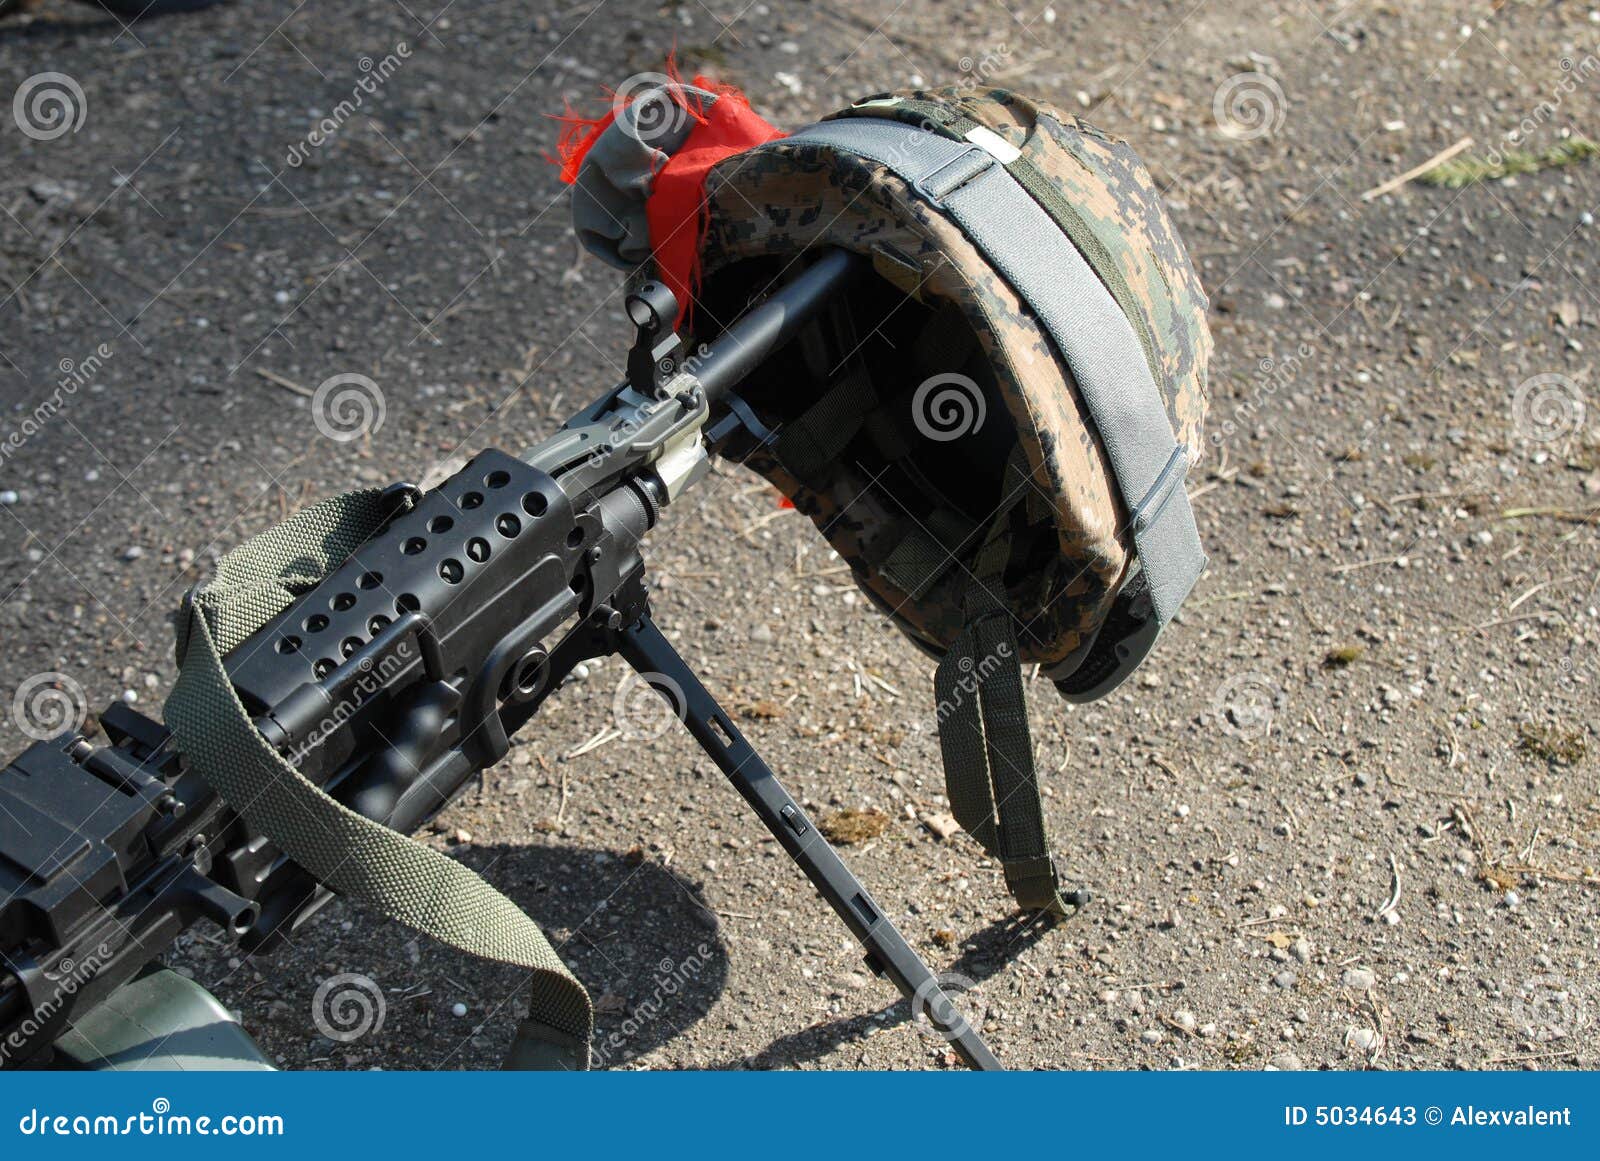 machine gun and helmet